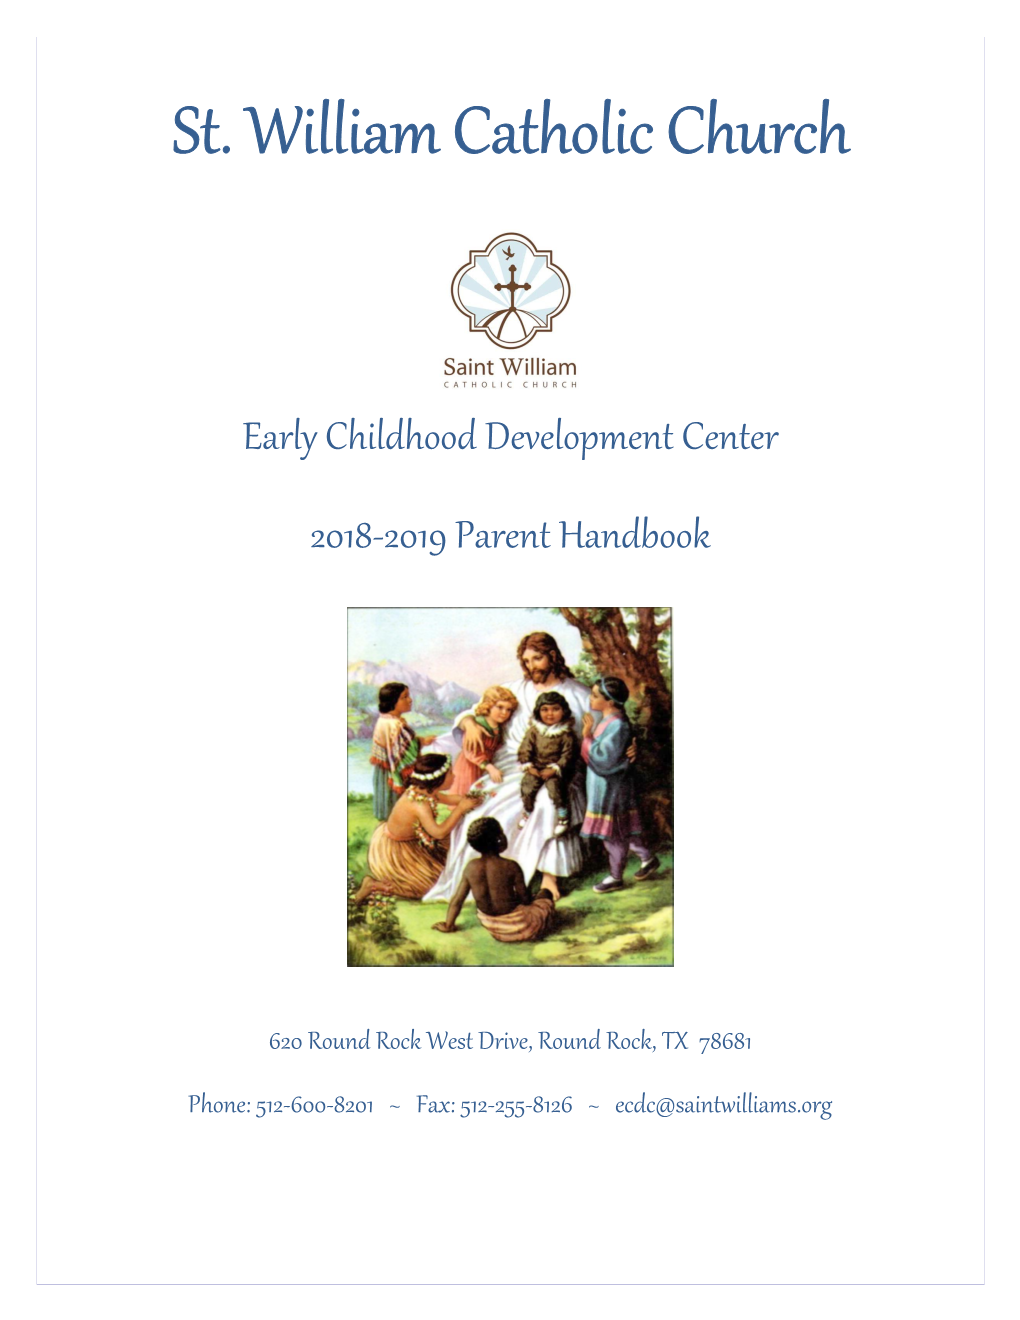 Early Childhood Development Center 2018-2019 Parent Handbook